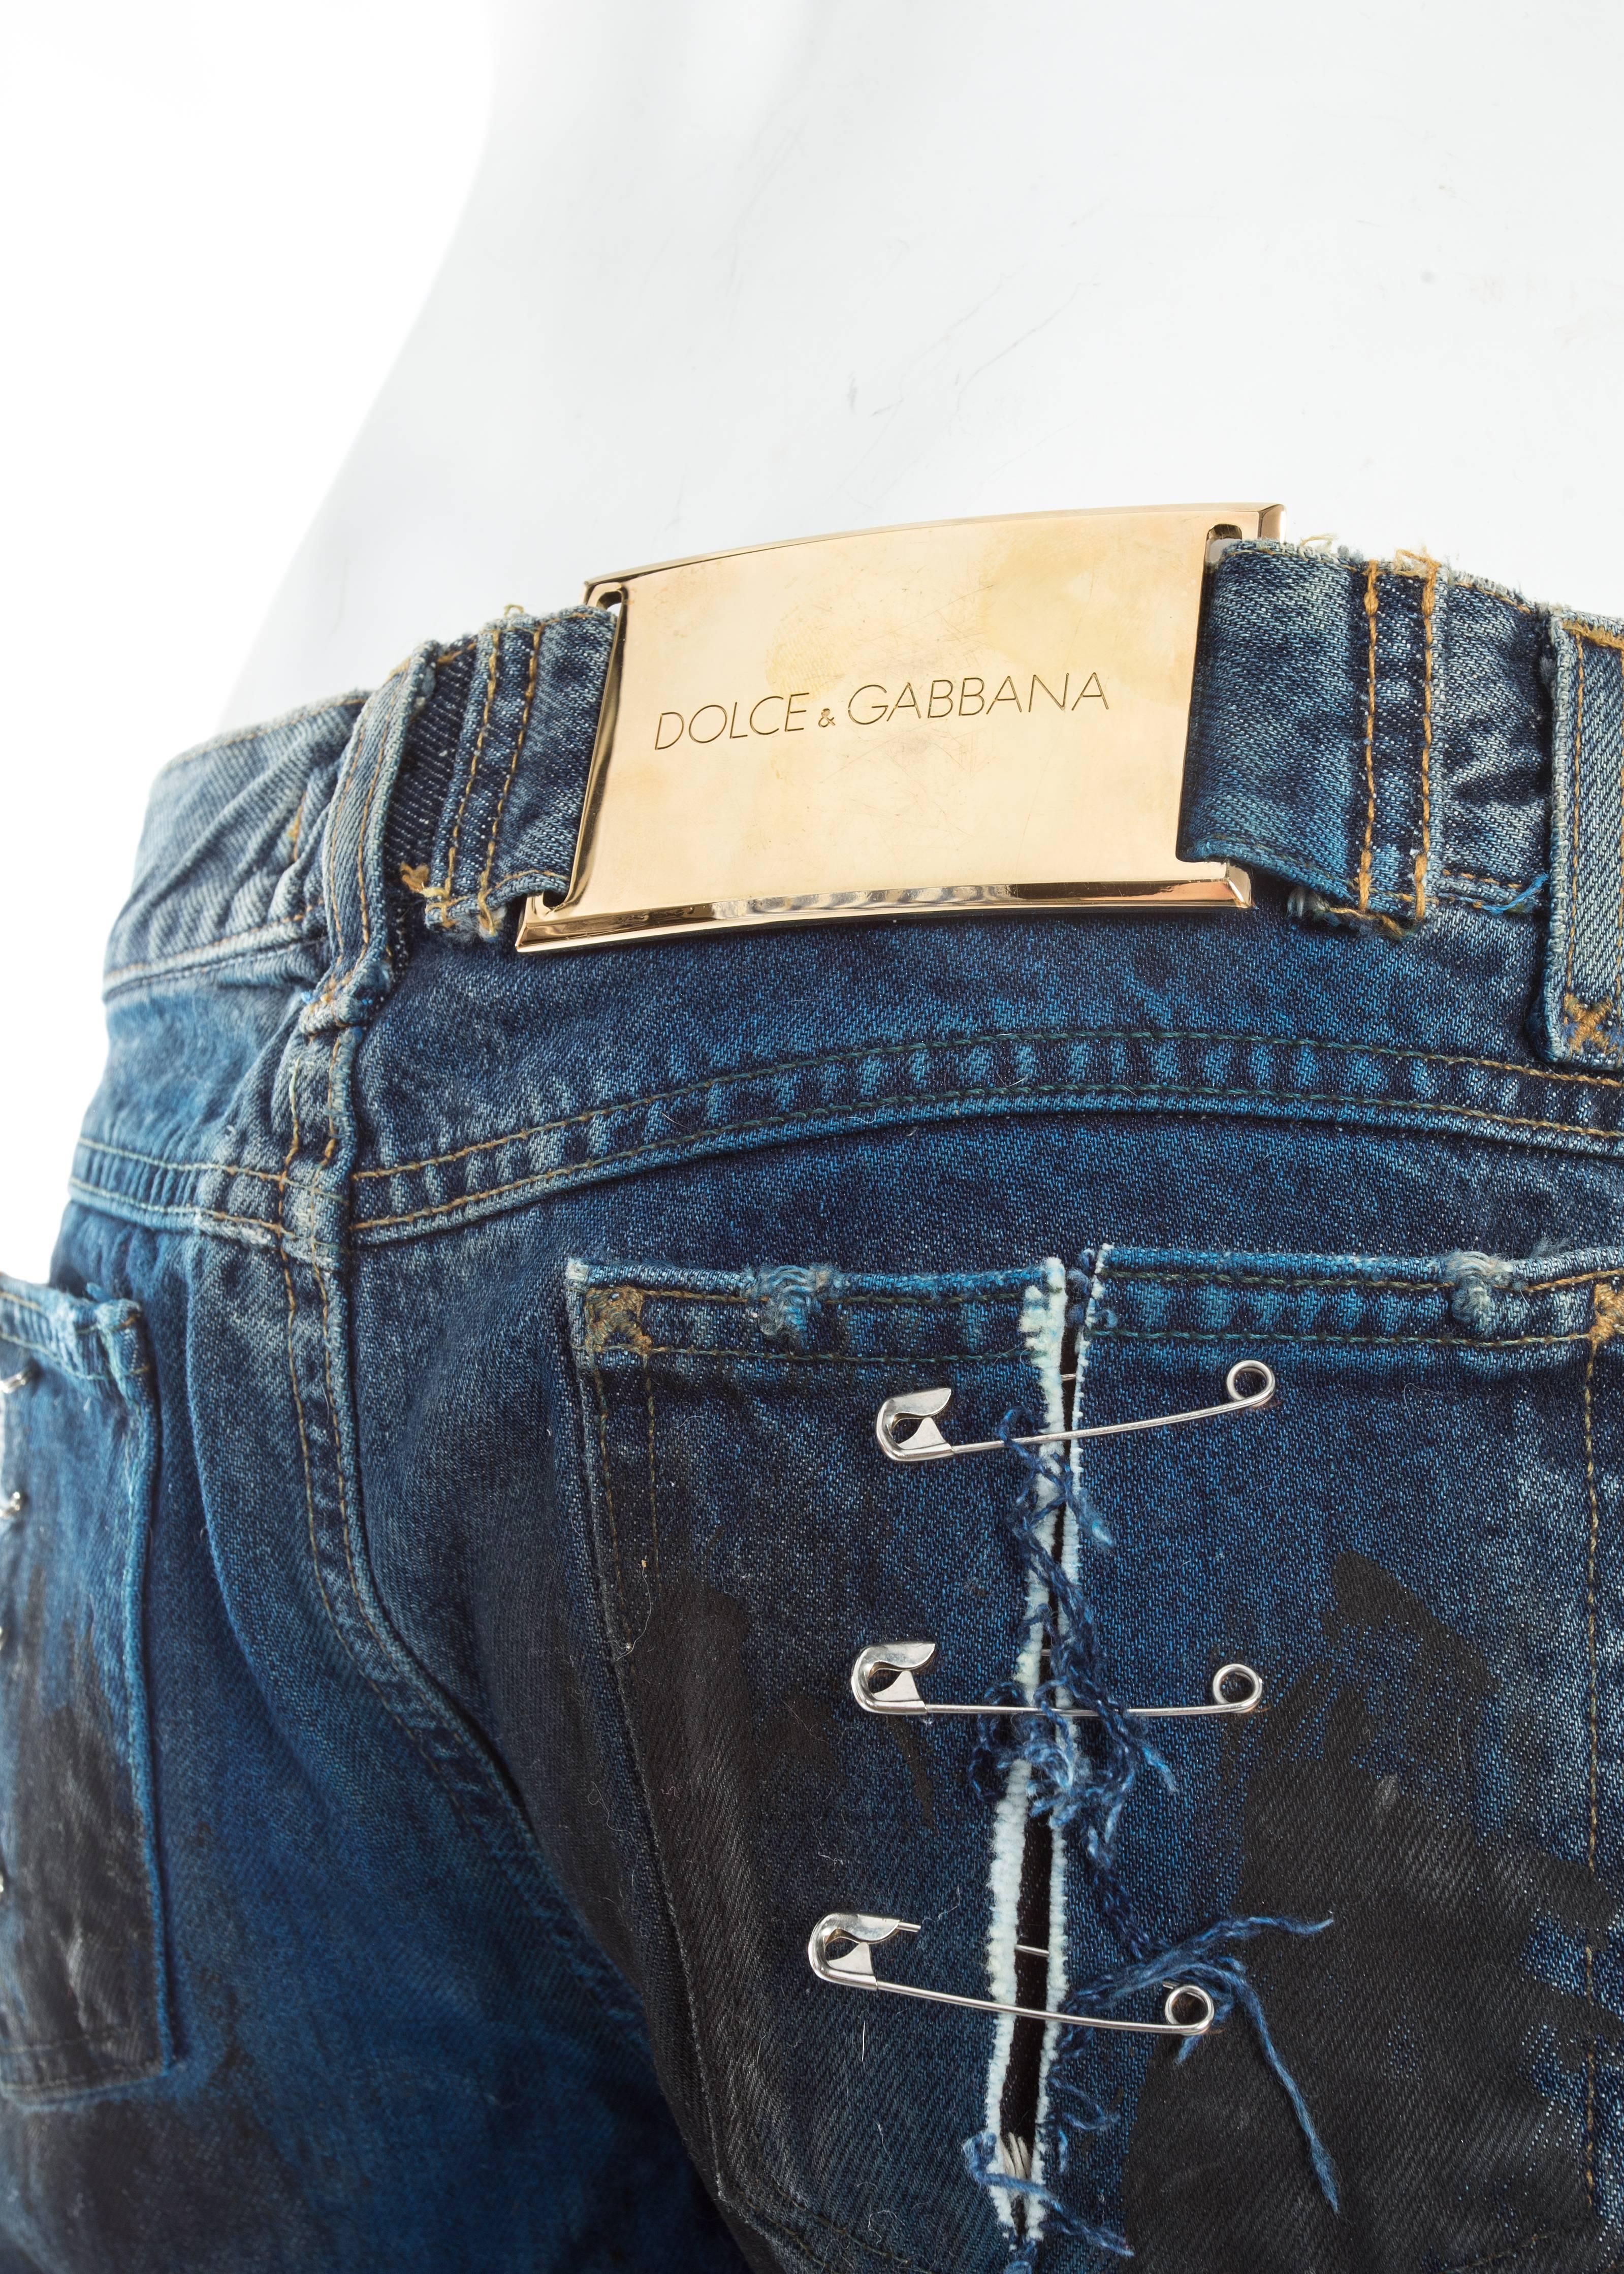 Dolce & Gabbana waxed denim 